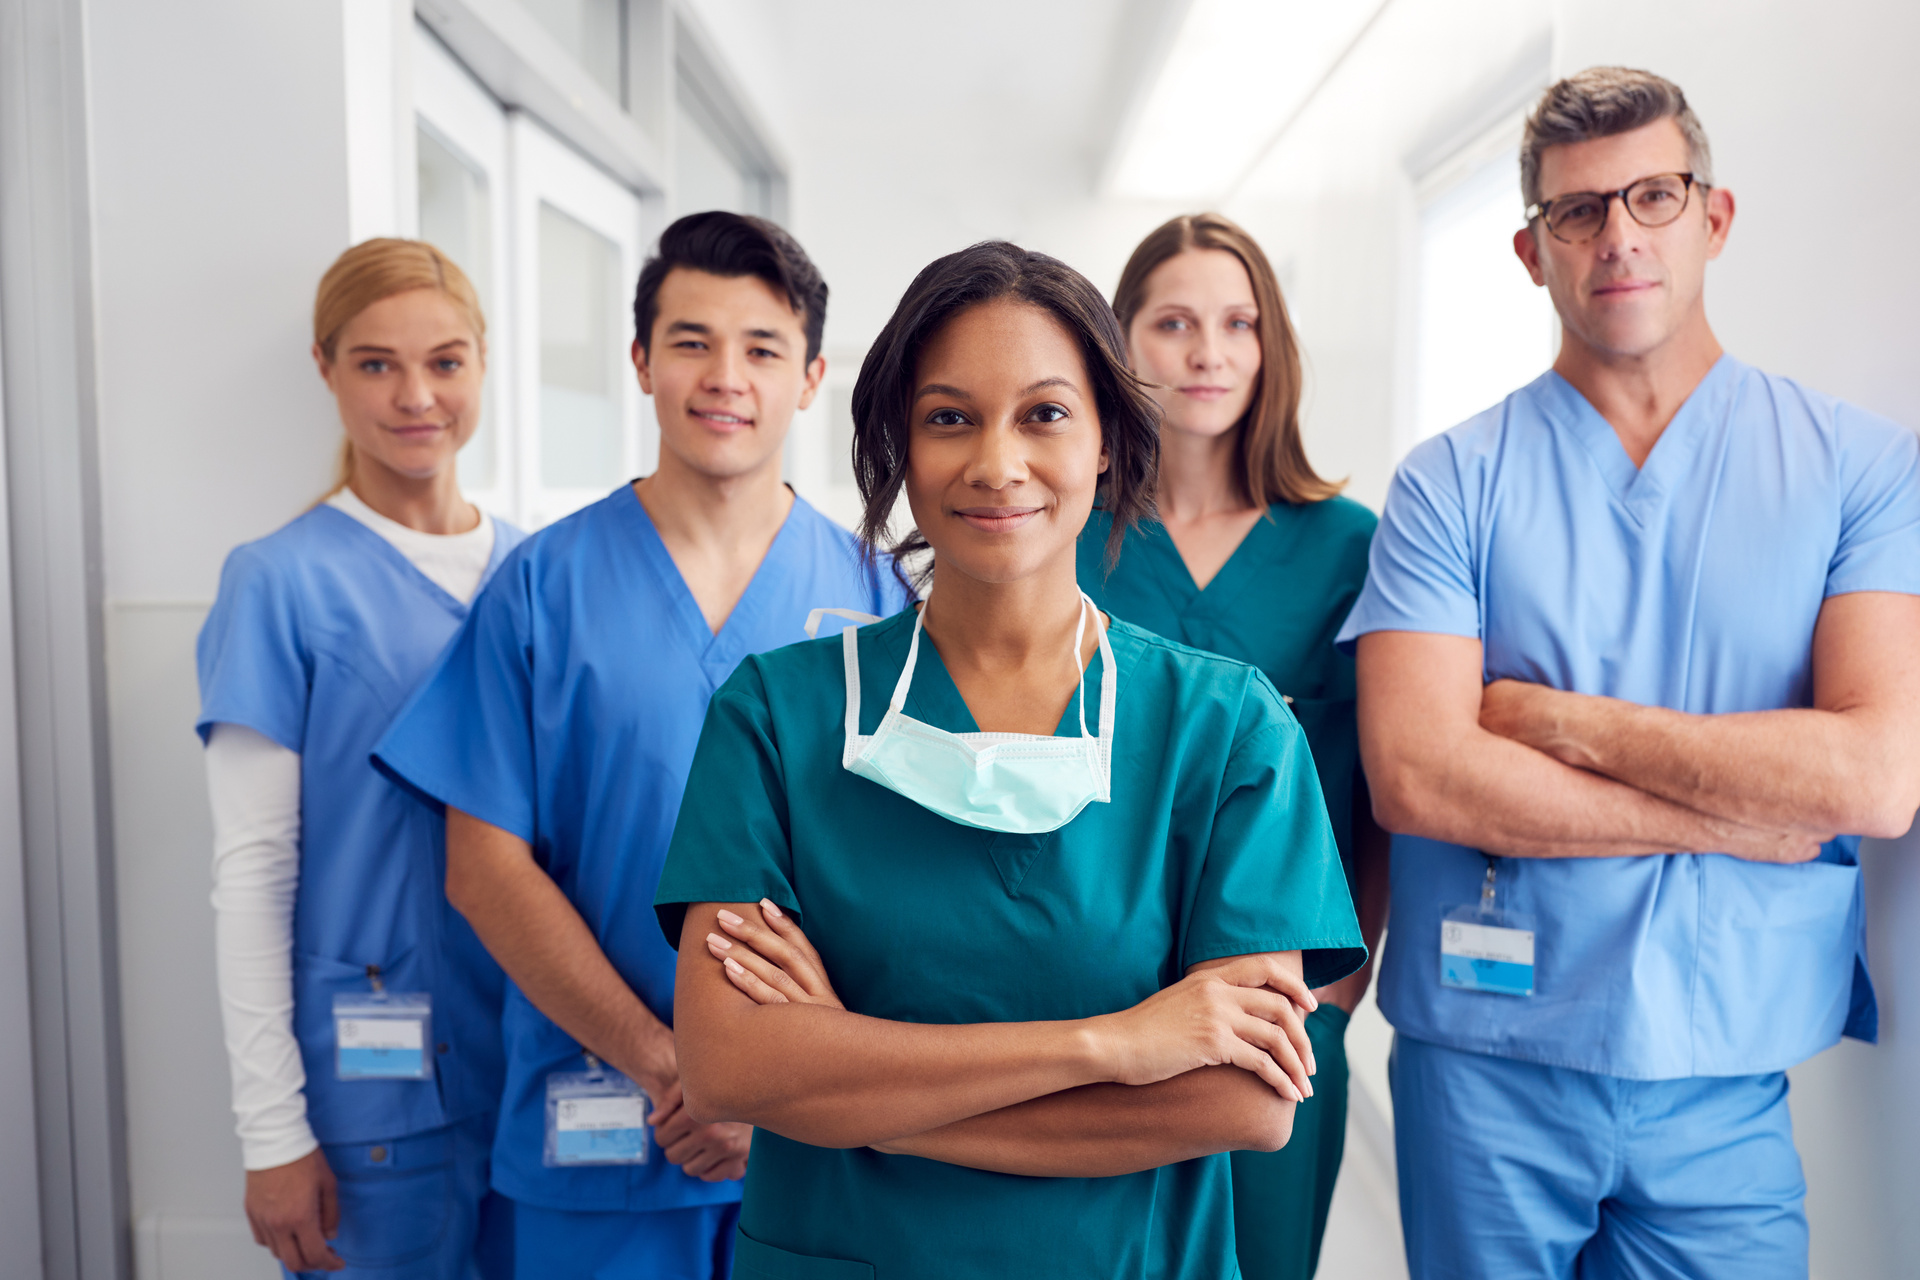 Team nursing: New strategies for nursing orientation